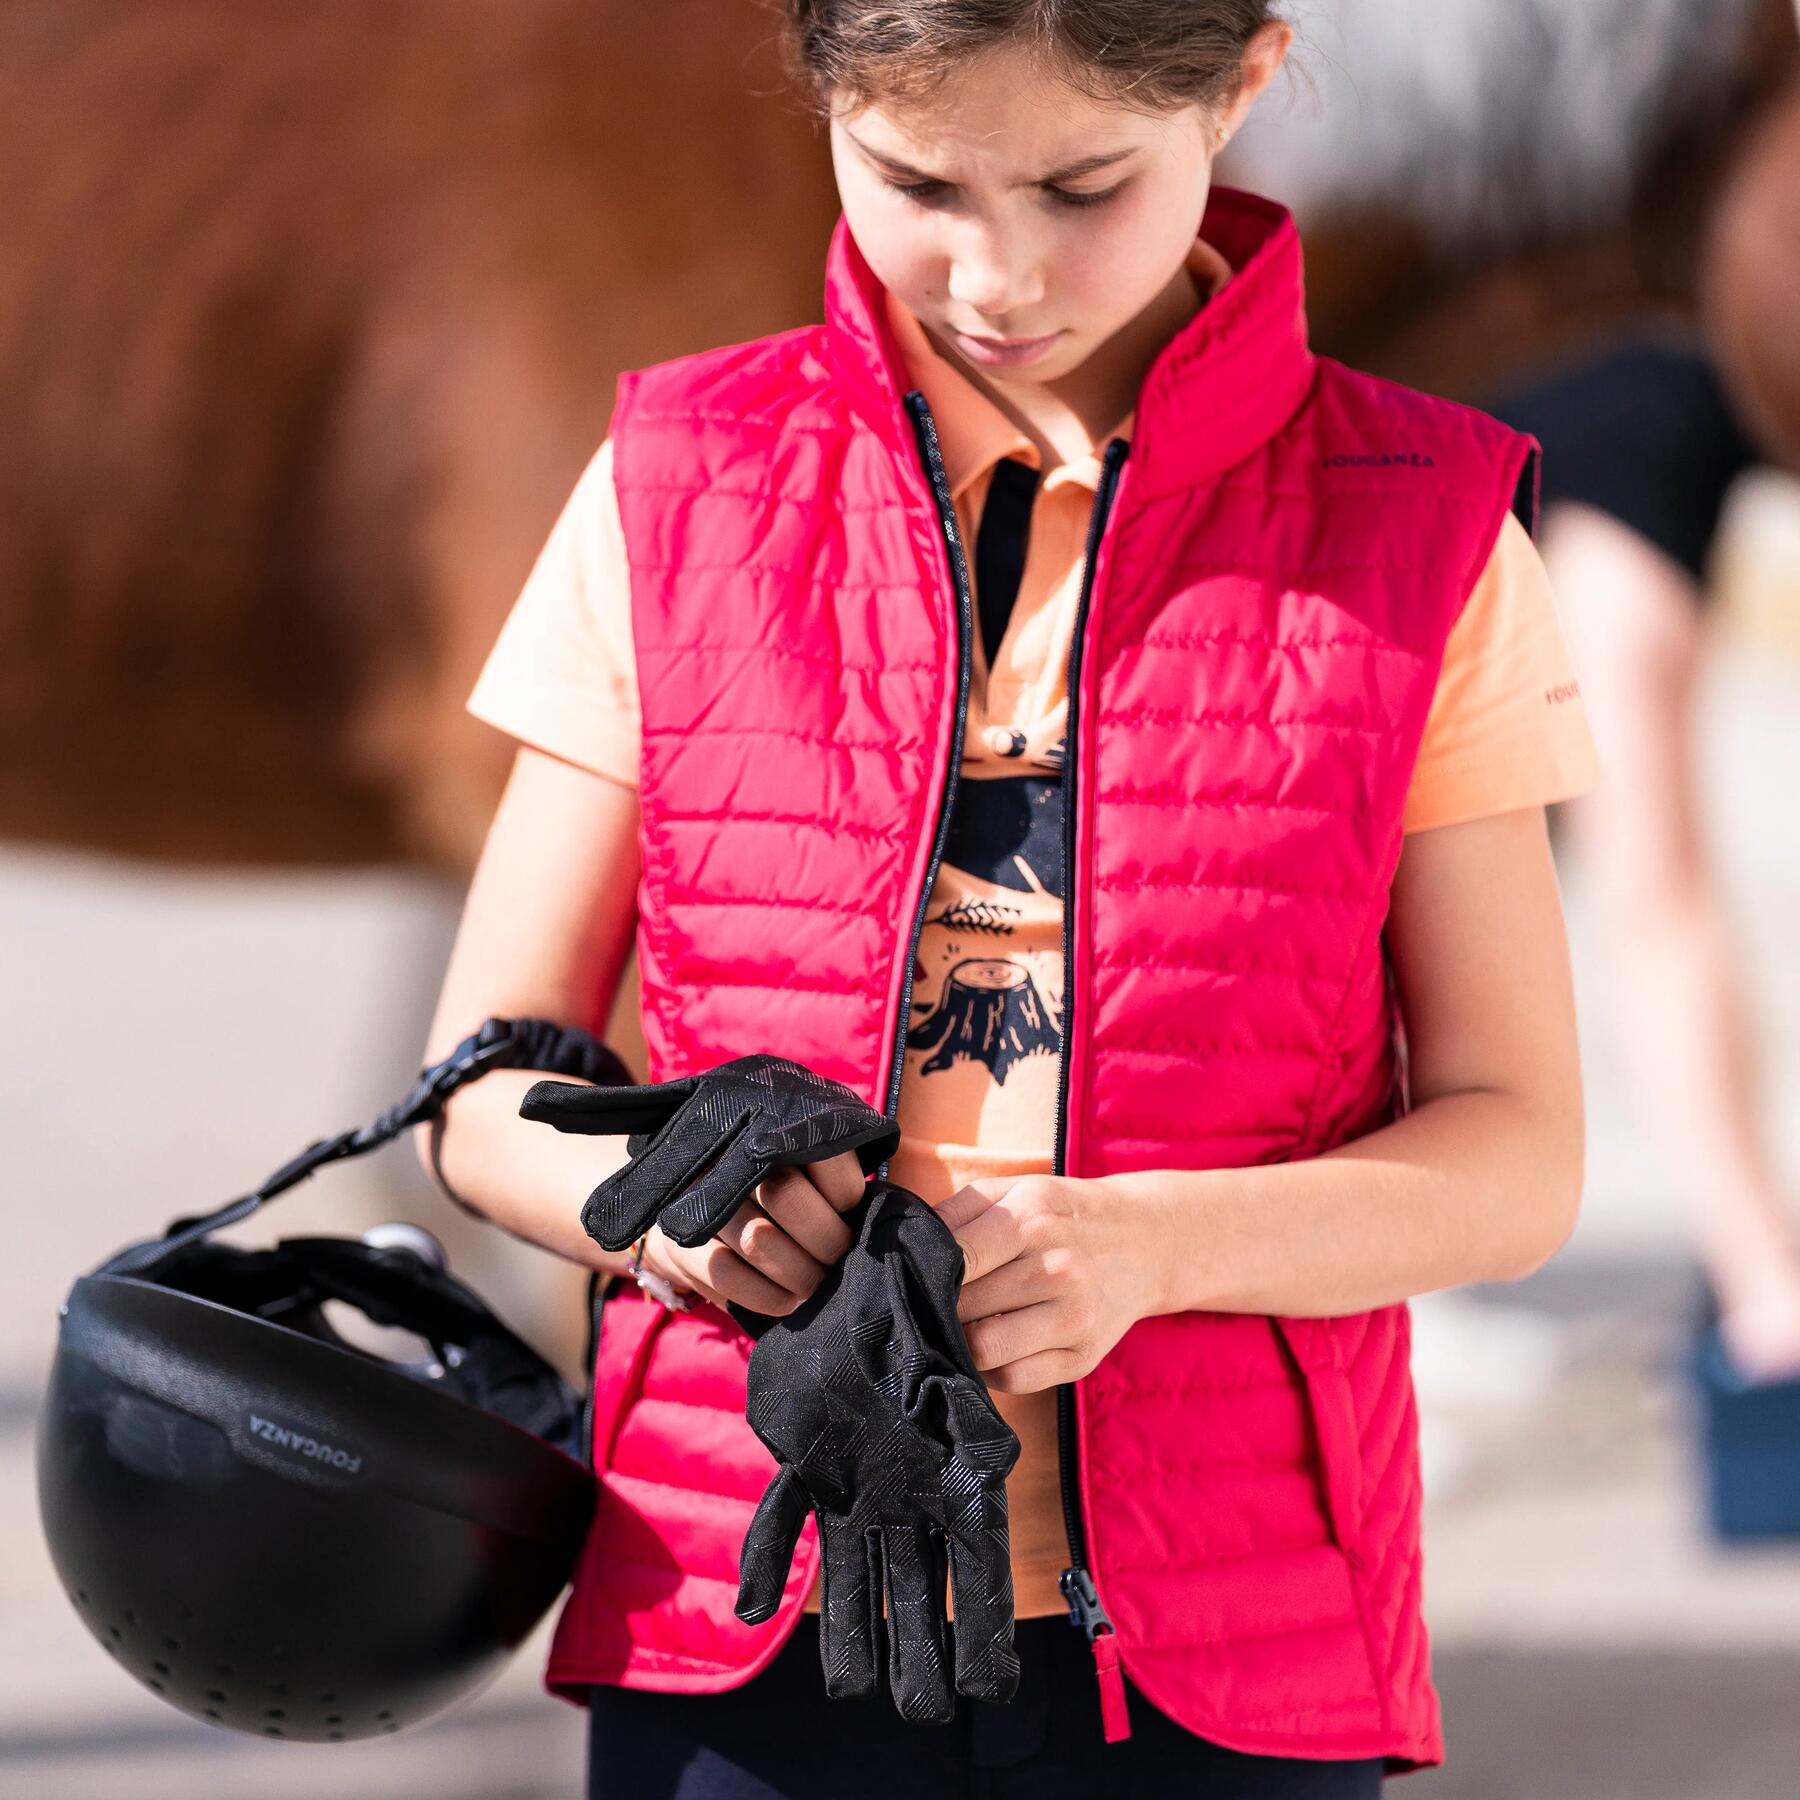 Welke uitrusting om te beginnen met paardrijden?